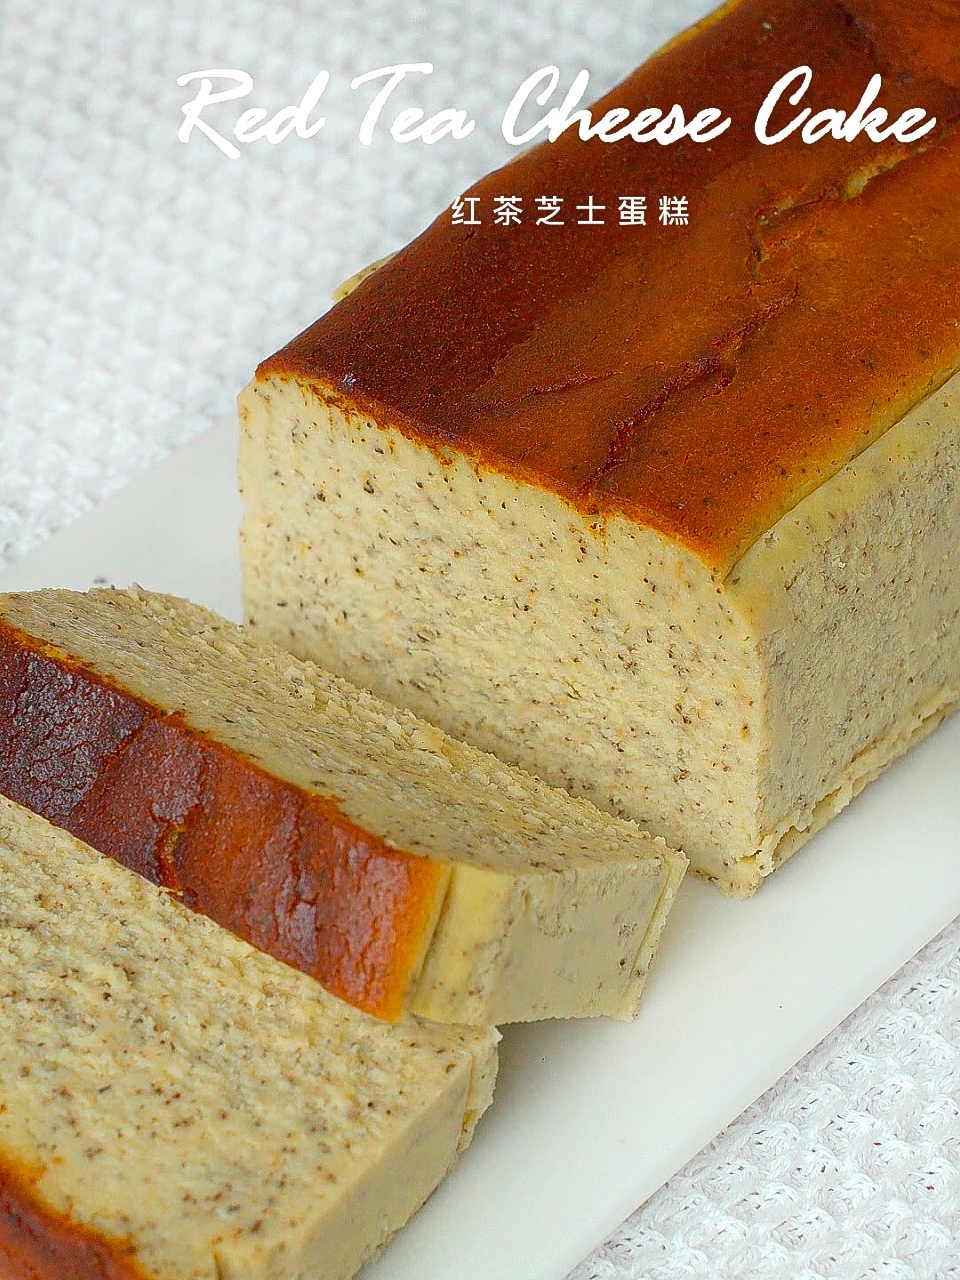 米其林配方|东京NO.1红茶芝士蛋糕 在家成功复刻的做法